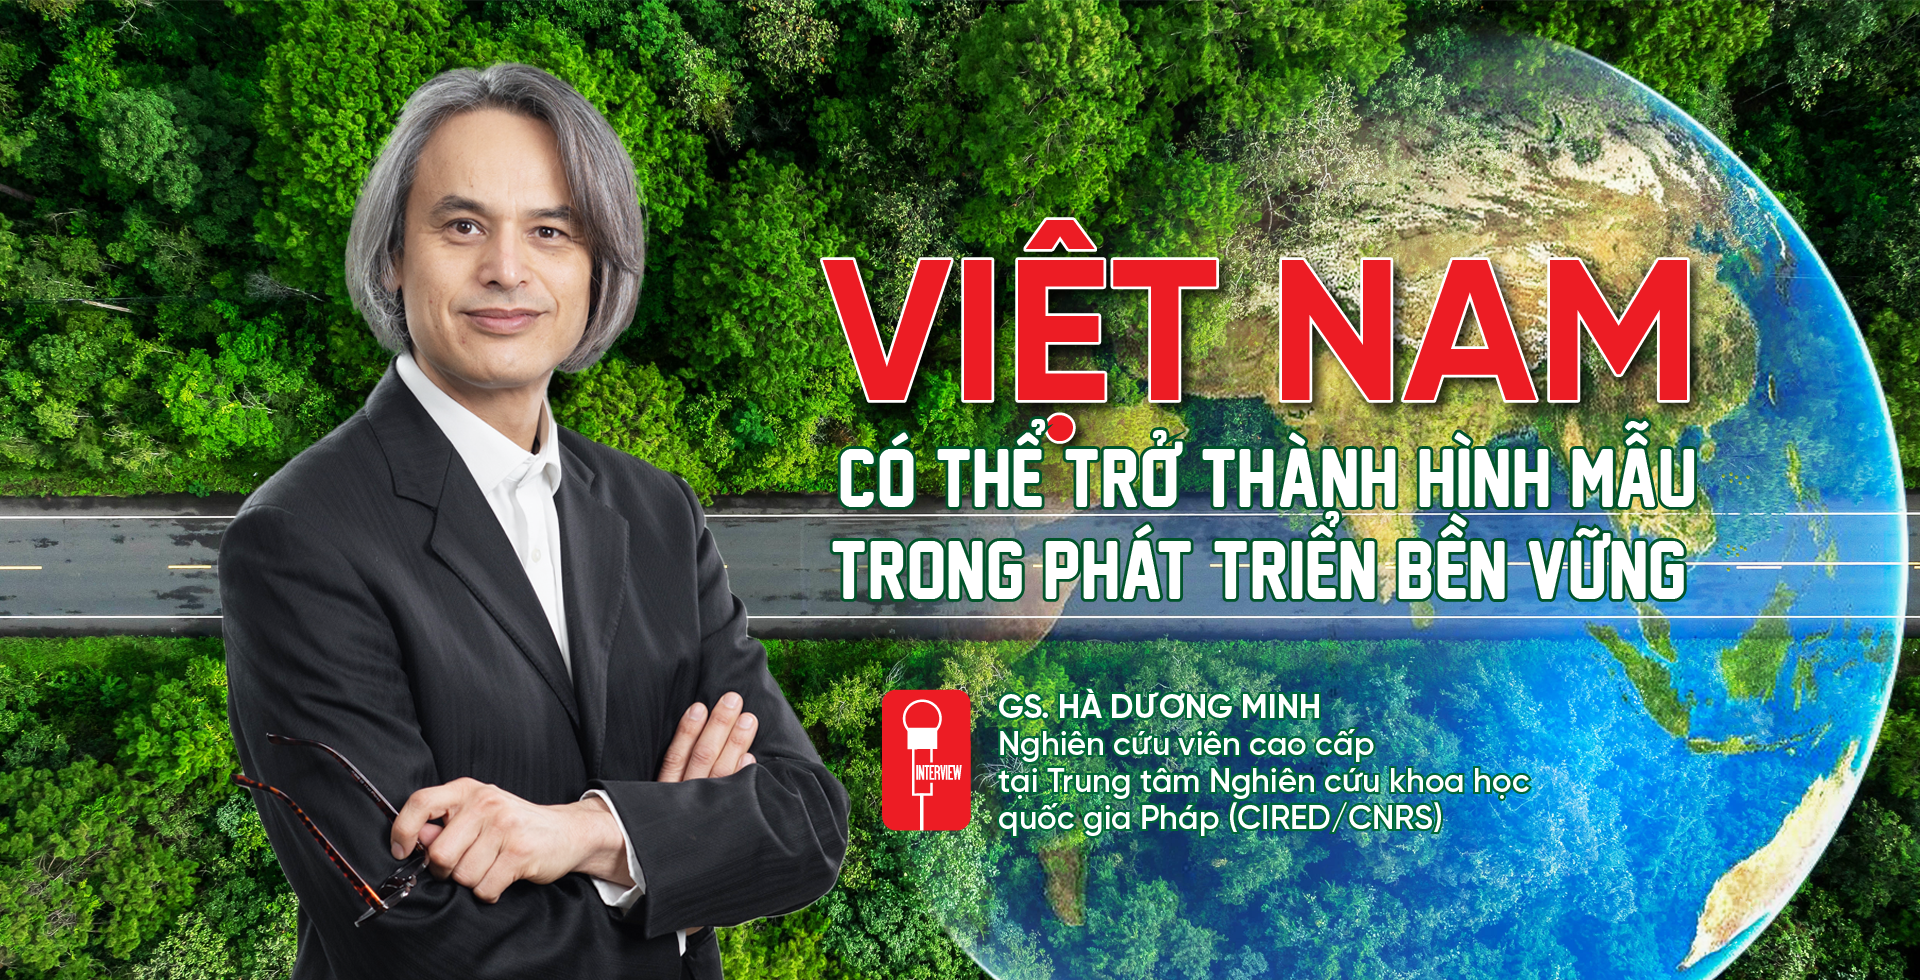 Việt Nam có thể trở thành hình mẫu trong phát triển bền vững - Ảnh 1